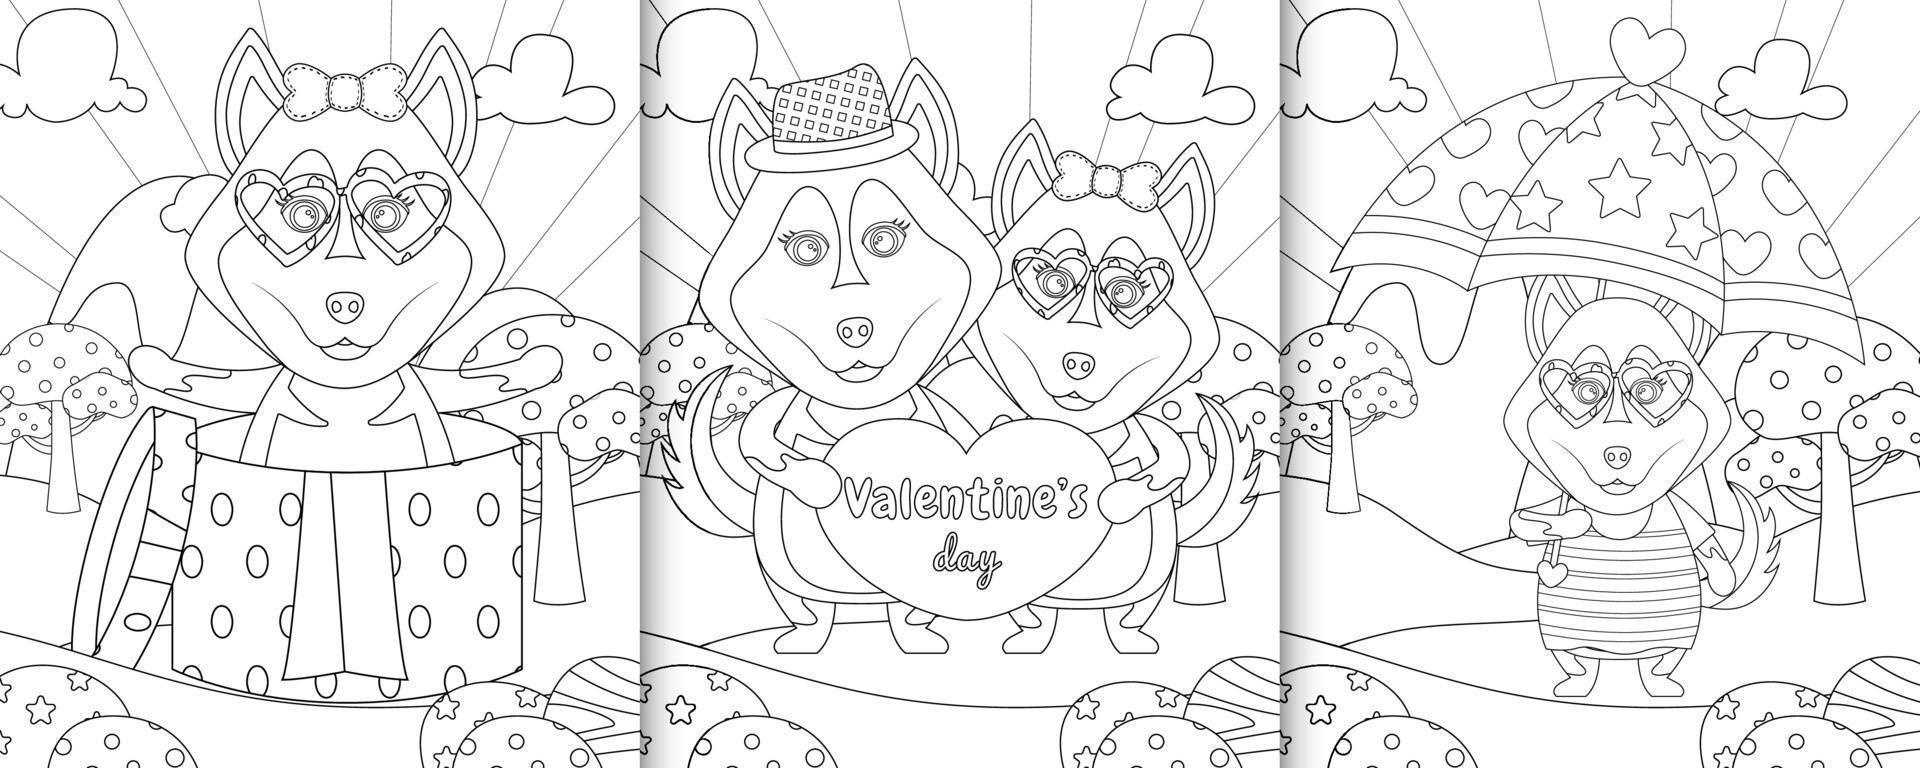 libro da colorare con simpatici personaggi di cani husky a tema San Valentino vettore